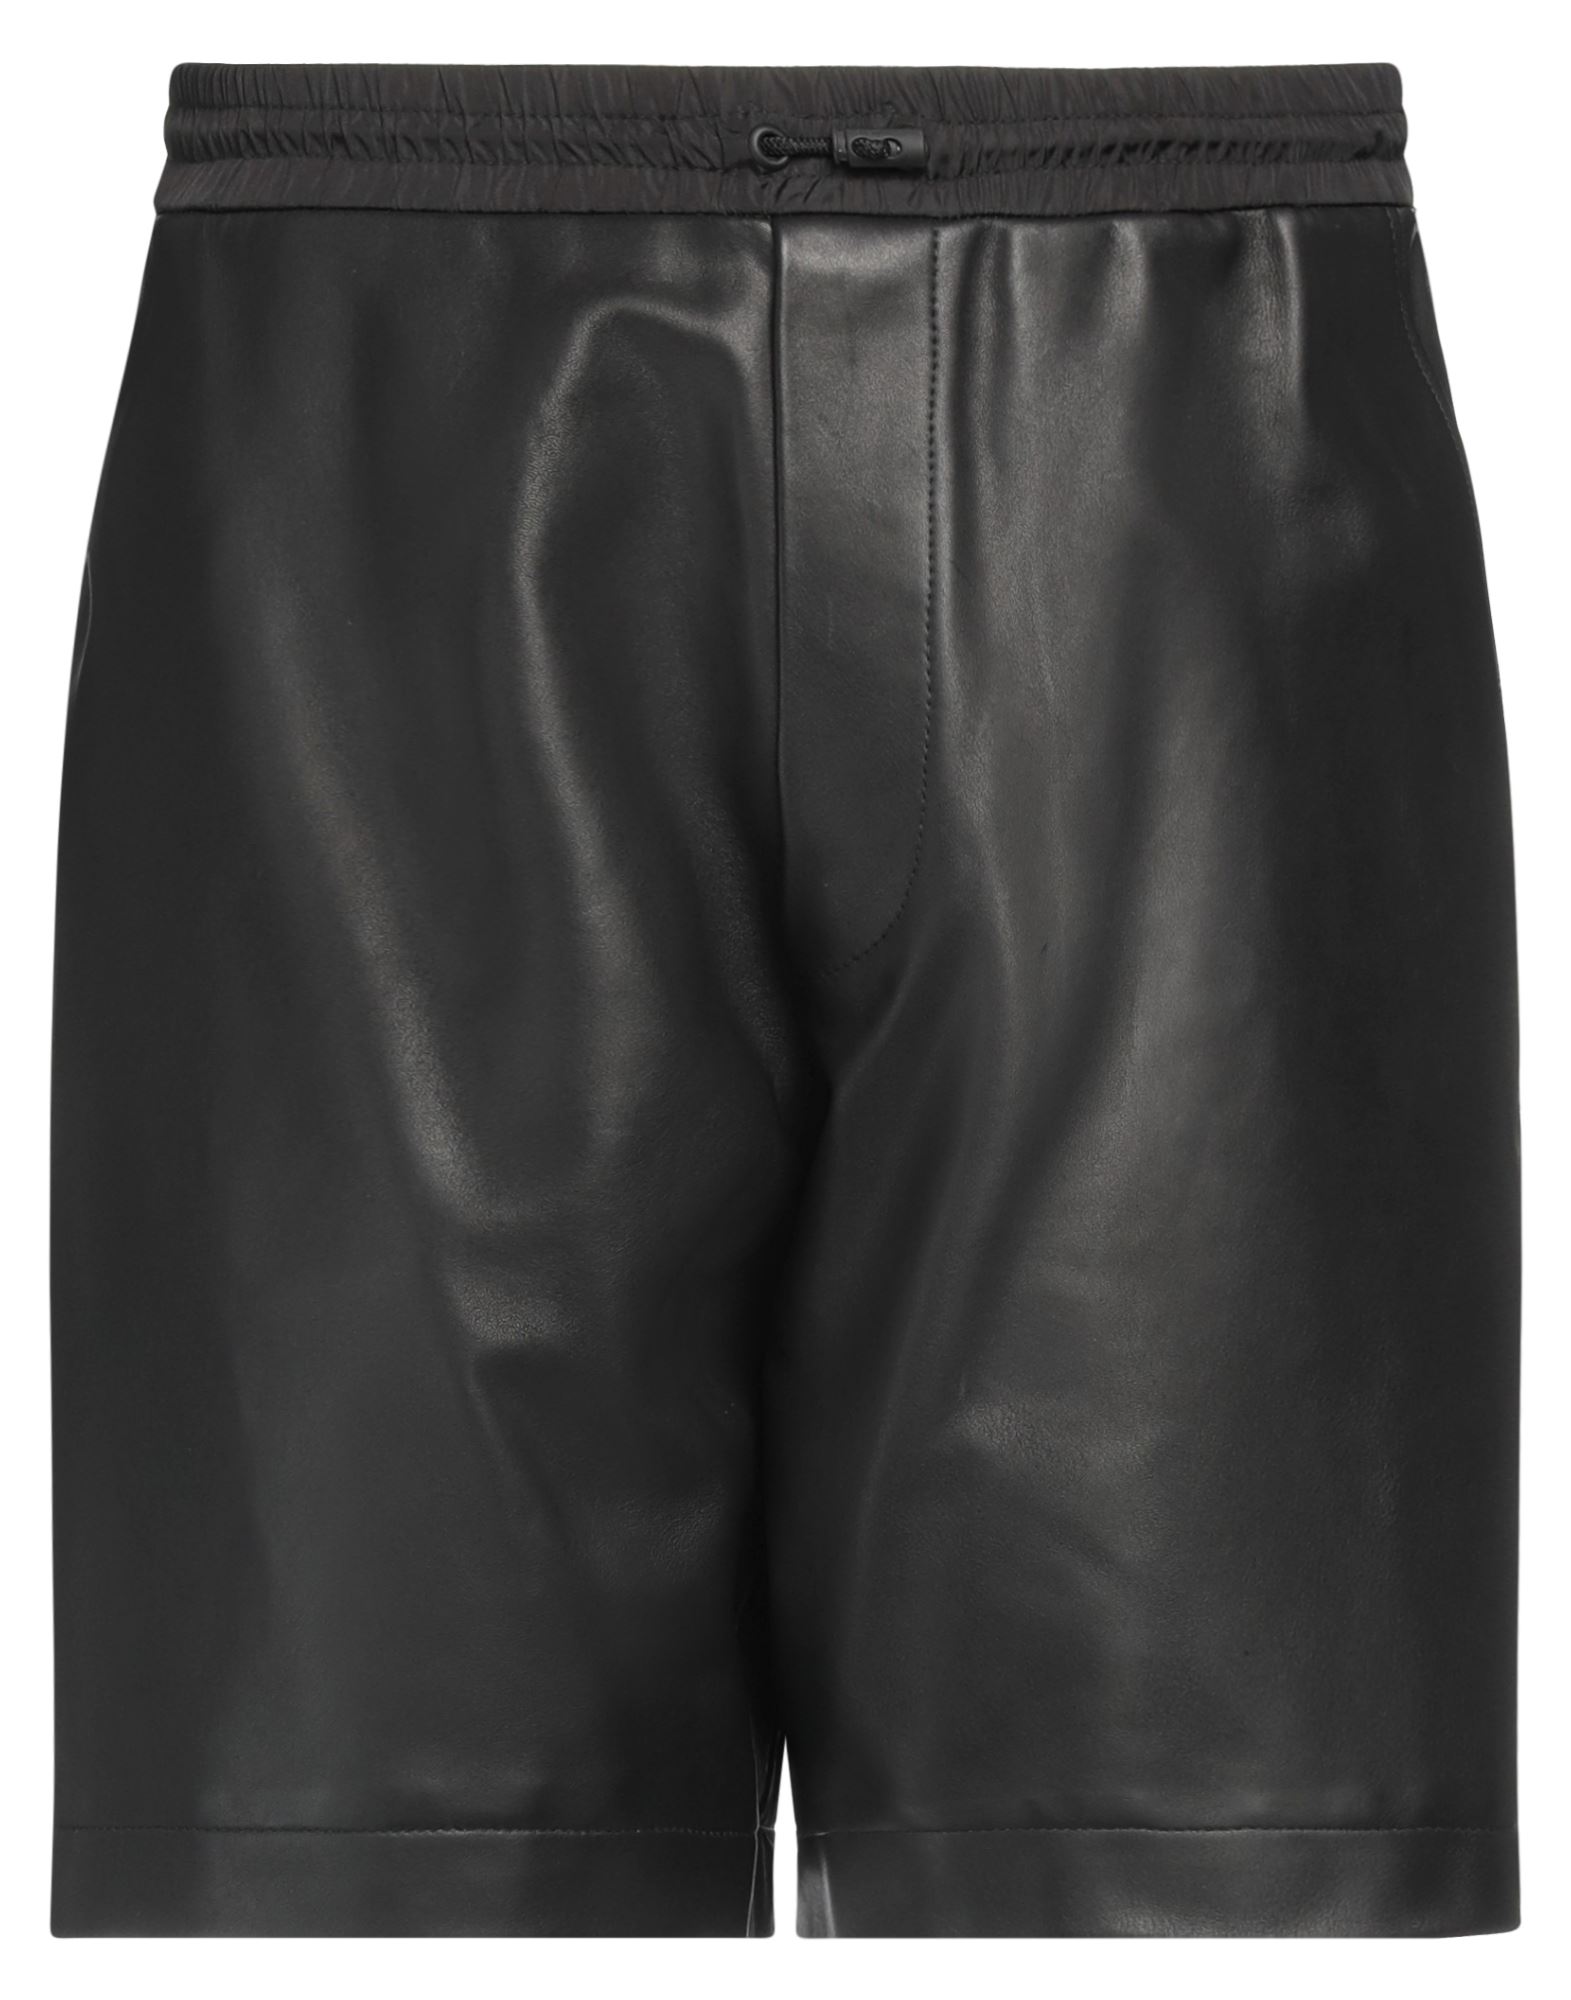 Dsquared2 Man Shorts & Bermuda Shorts Black Size 34 Ovine Leather